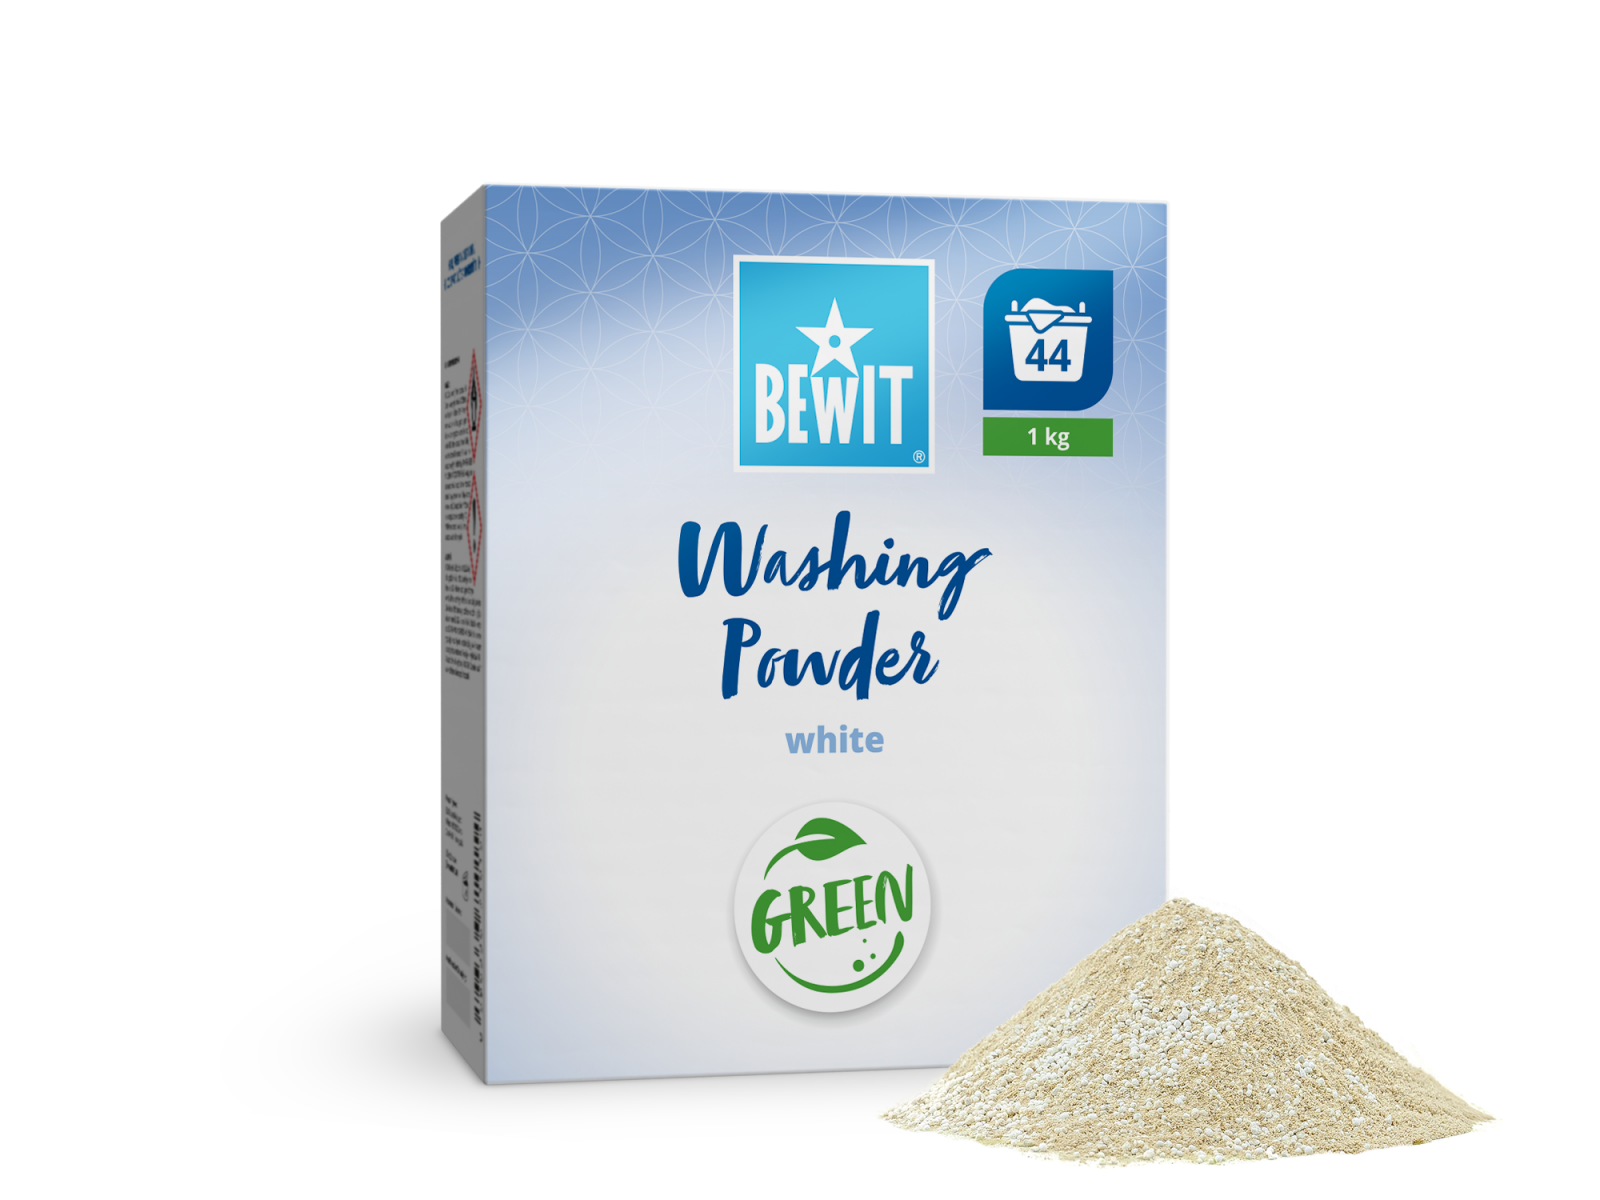 BEWIT Washing Powder White - Laundry detergents - 3